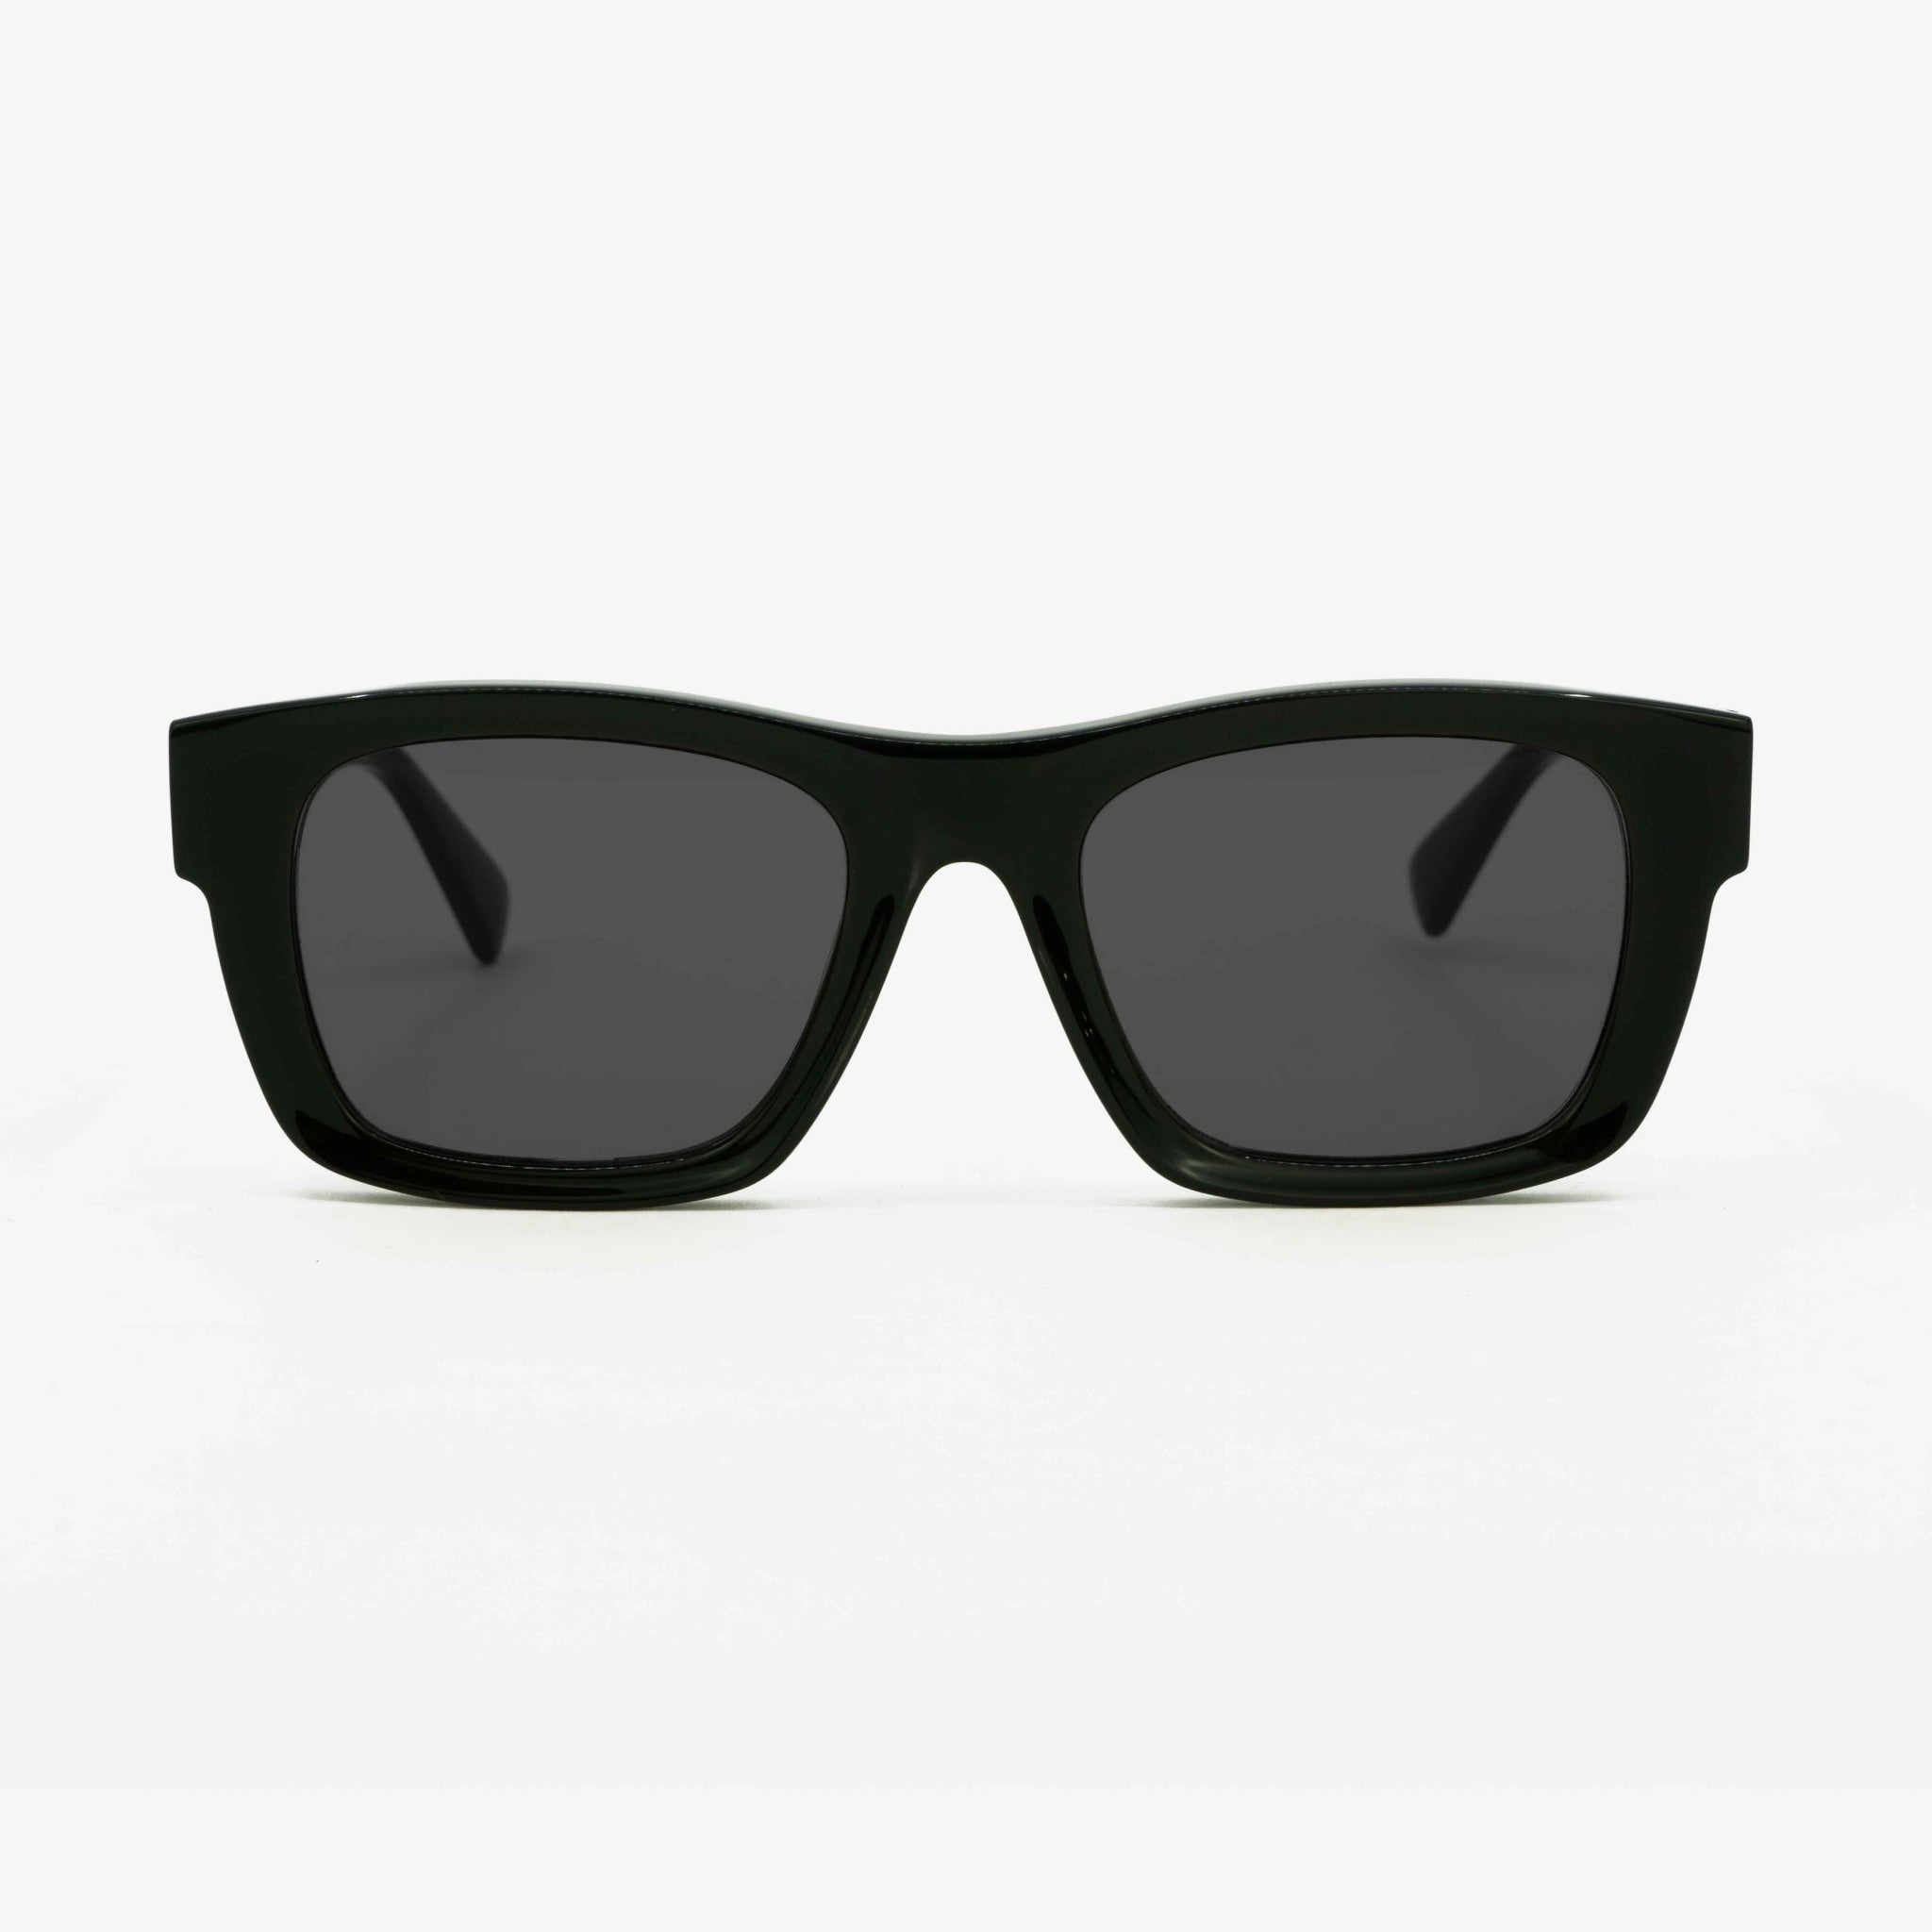 Big sunglasses modern look. black | MessyWeekend